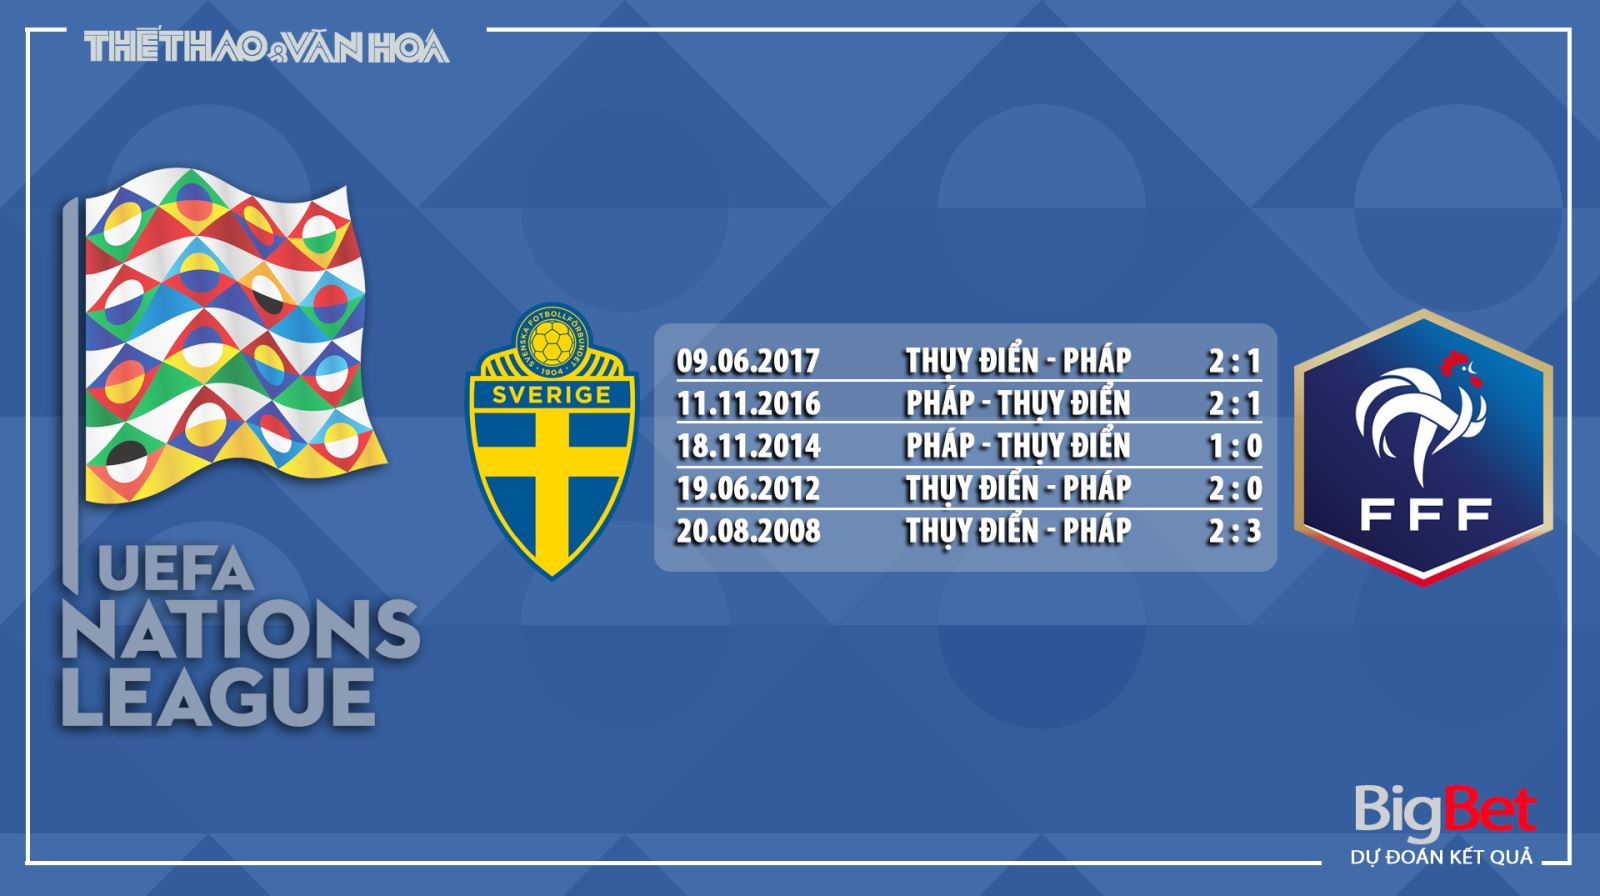 Nhận định bóng đá Thụy Điển vs Pháp, Thuỵ Điển đấu với Pháp, Pháp, Thuỵ Điển, nhận định, dự đoán, nhận định bóng đá Thụy Điển vs Pháp, UEFA Nations League